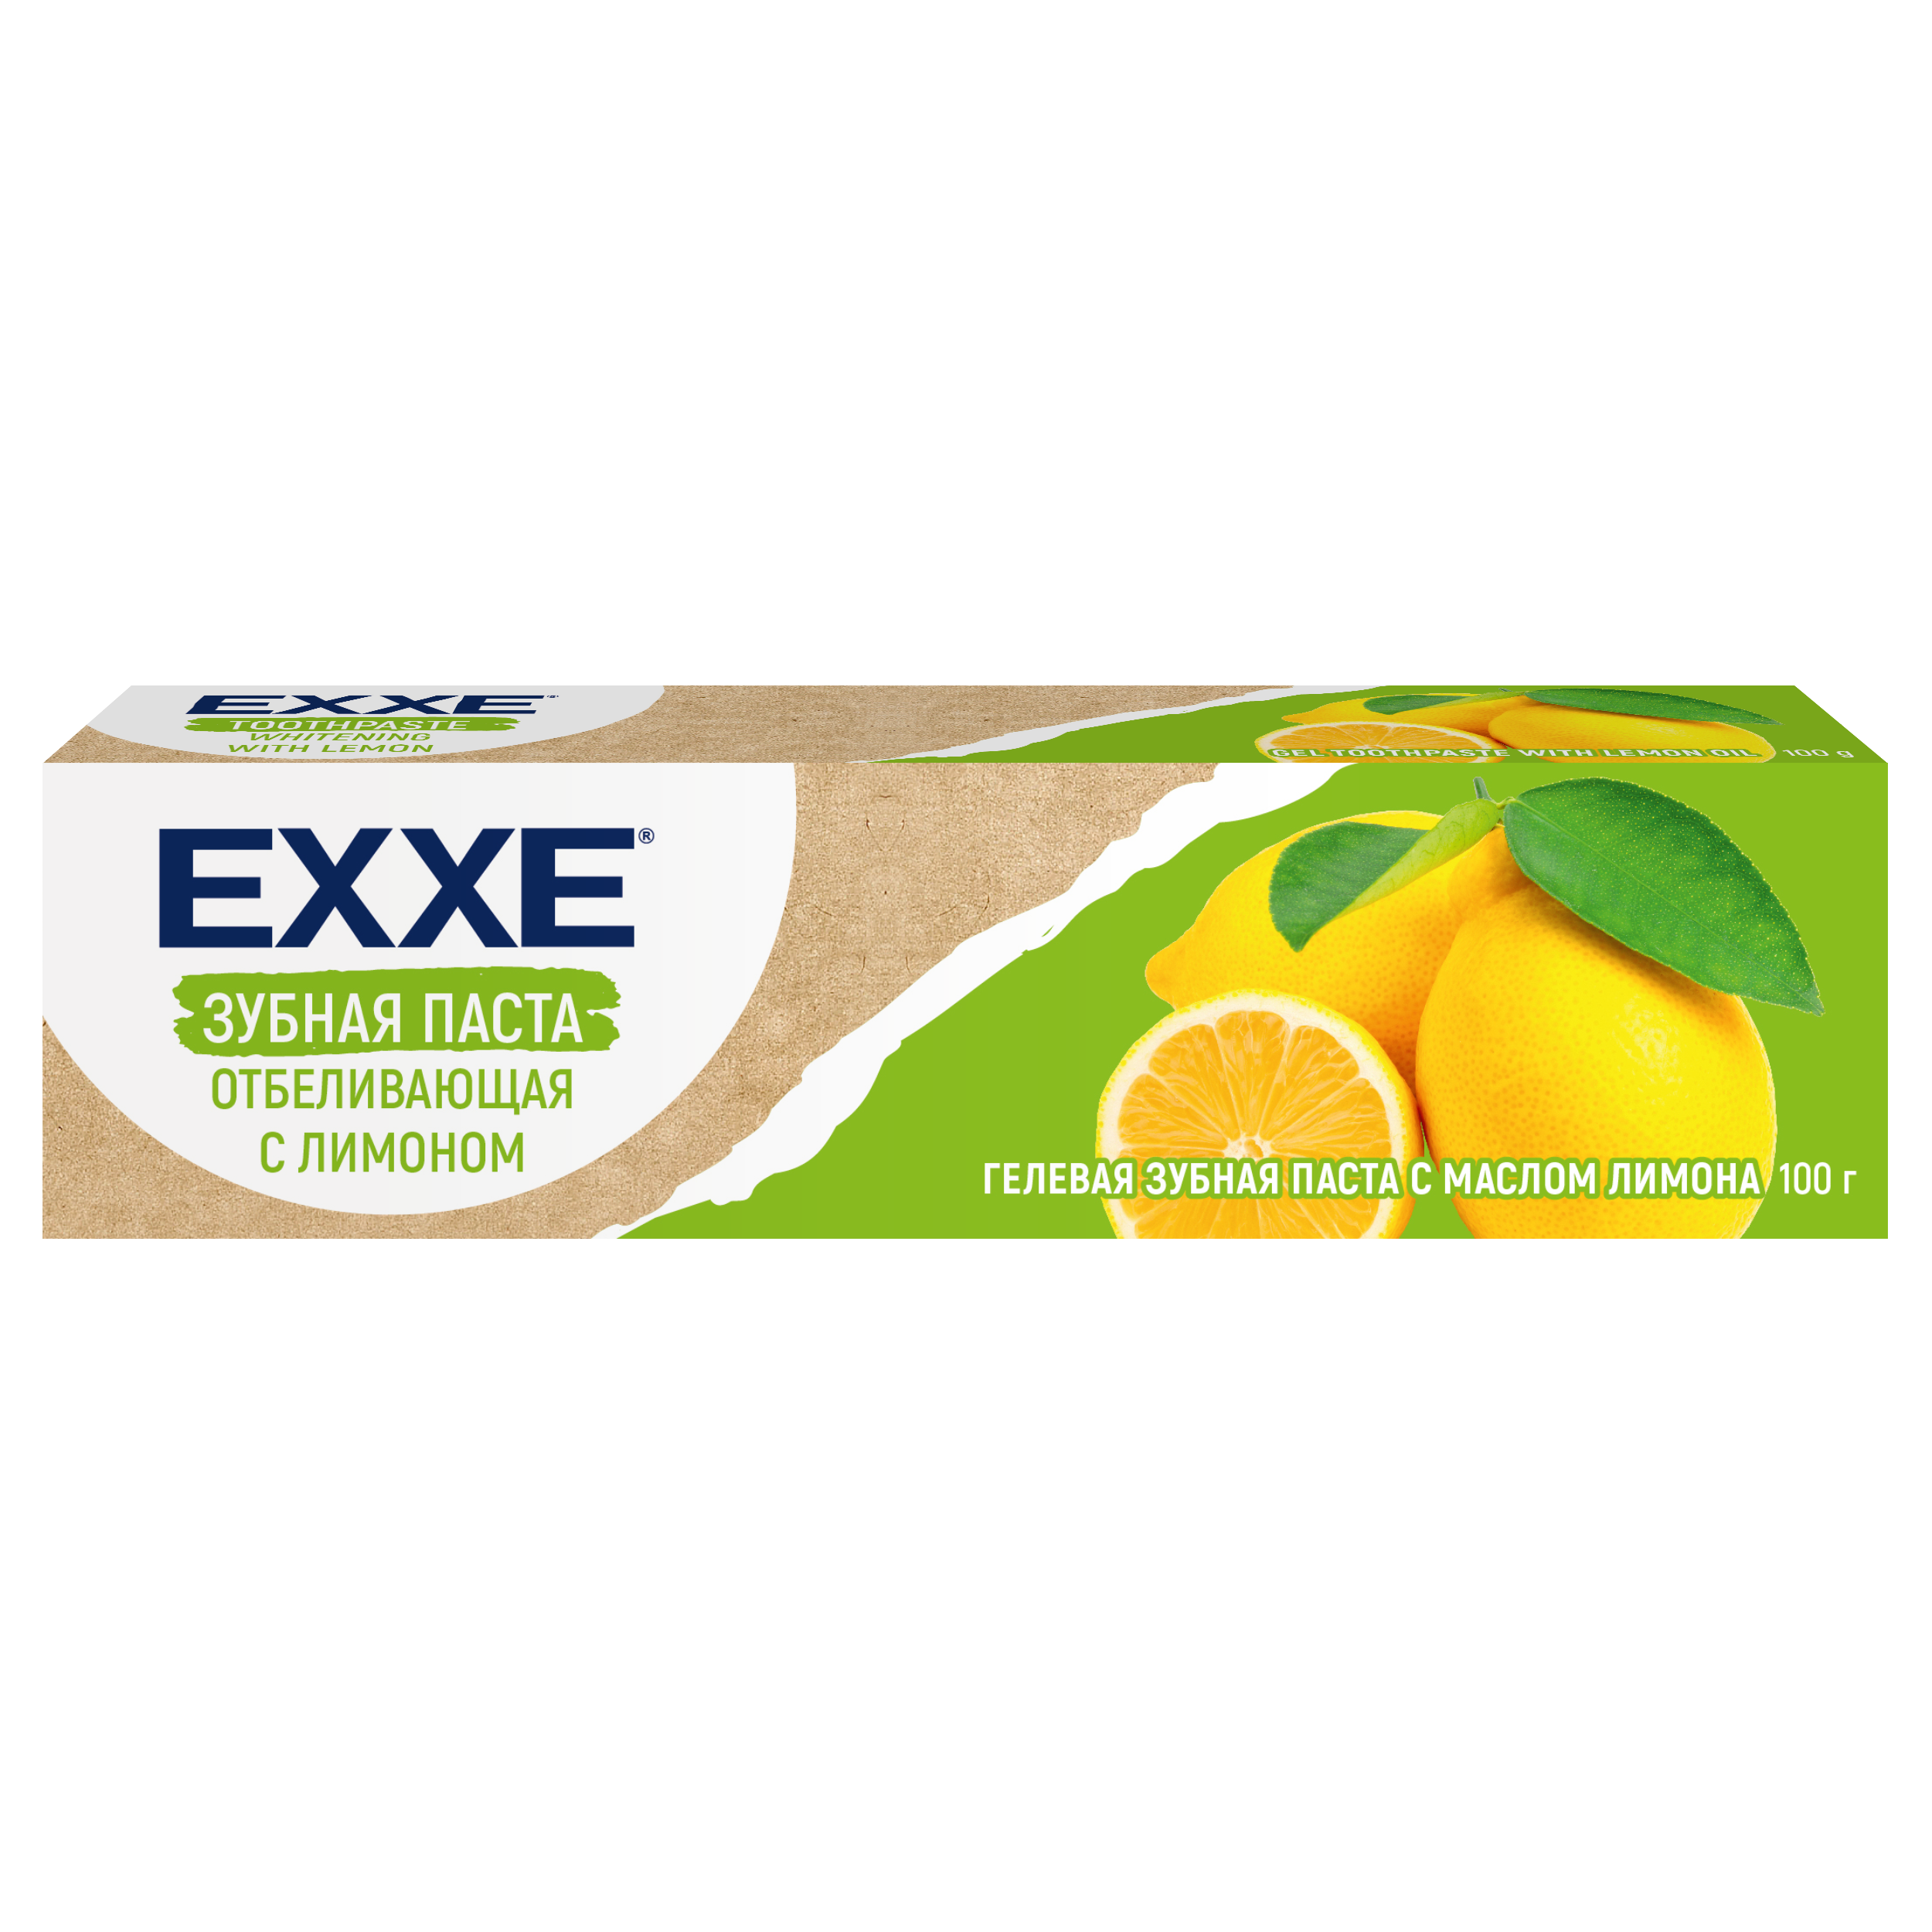 Зубная паста Exxe Отбеливающая с лимоном, 100 г зубная паста exxe ufc ultimate freshness свежесть и защита от кариеса 75мл